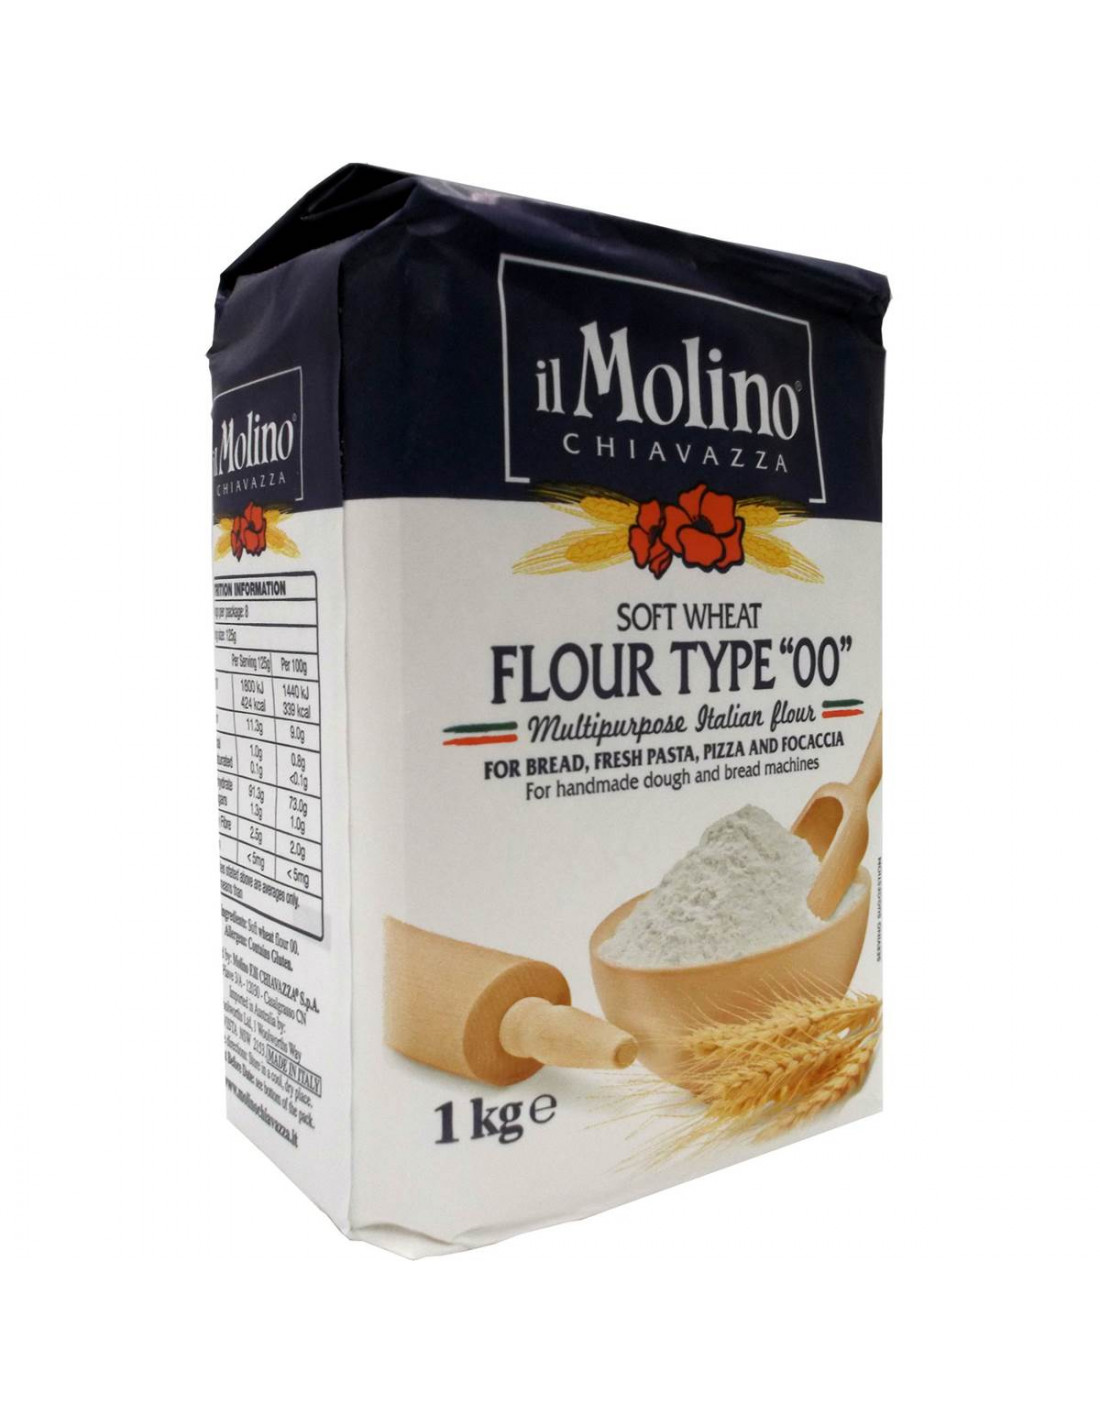 Soft wheat flour 0 - MANITOBA - Molino Chiavazza